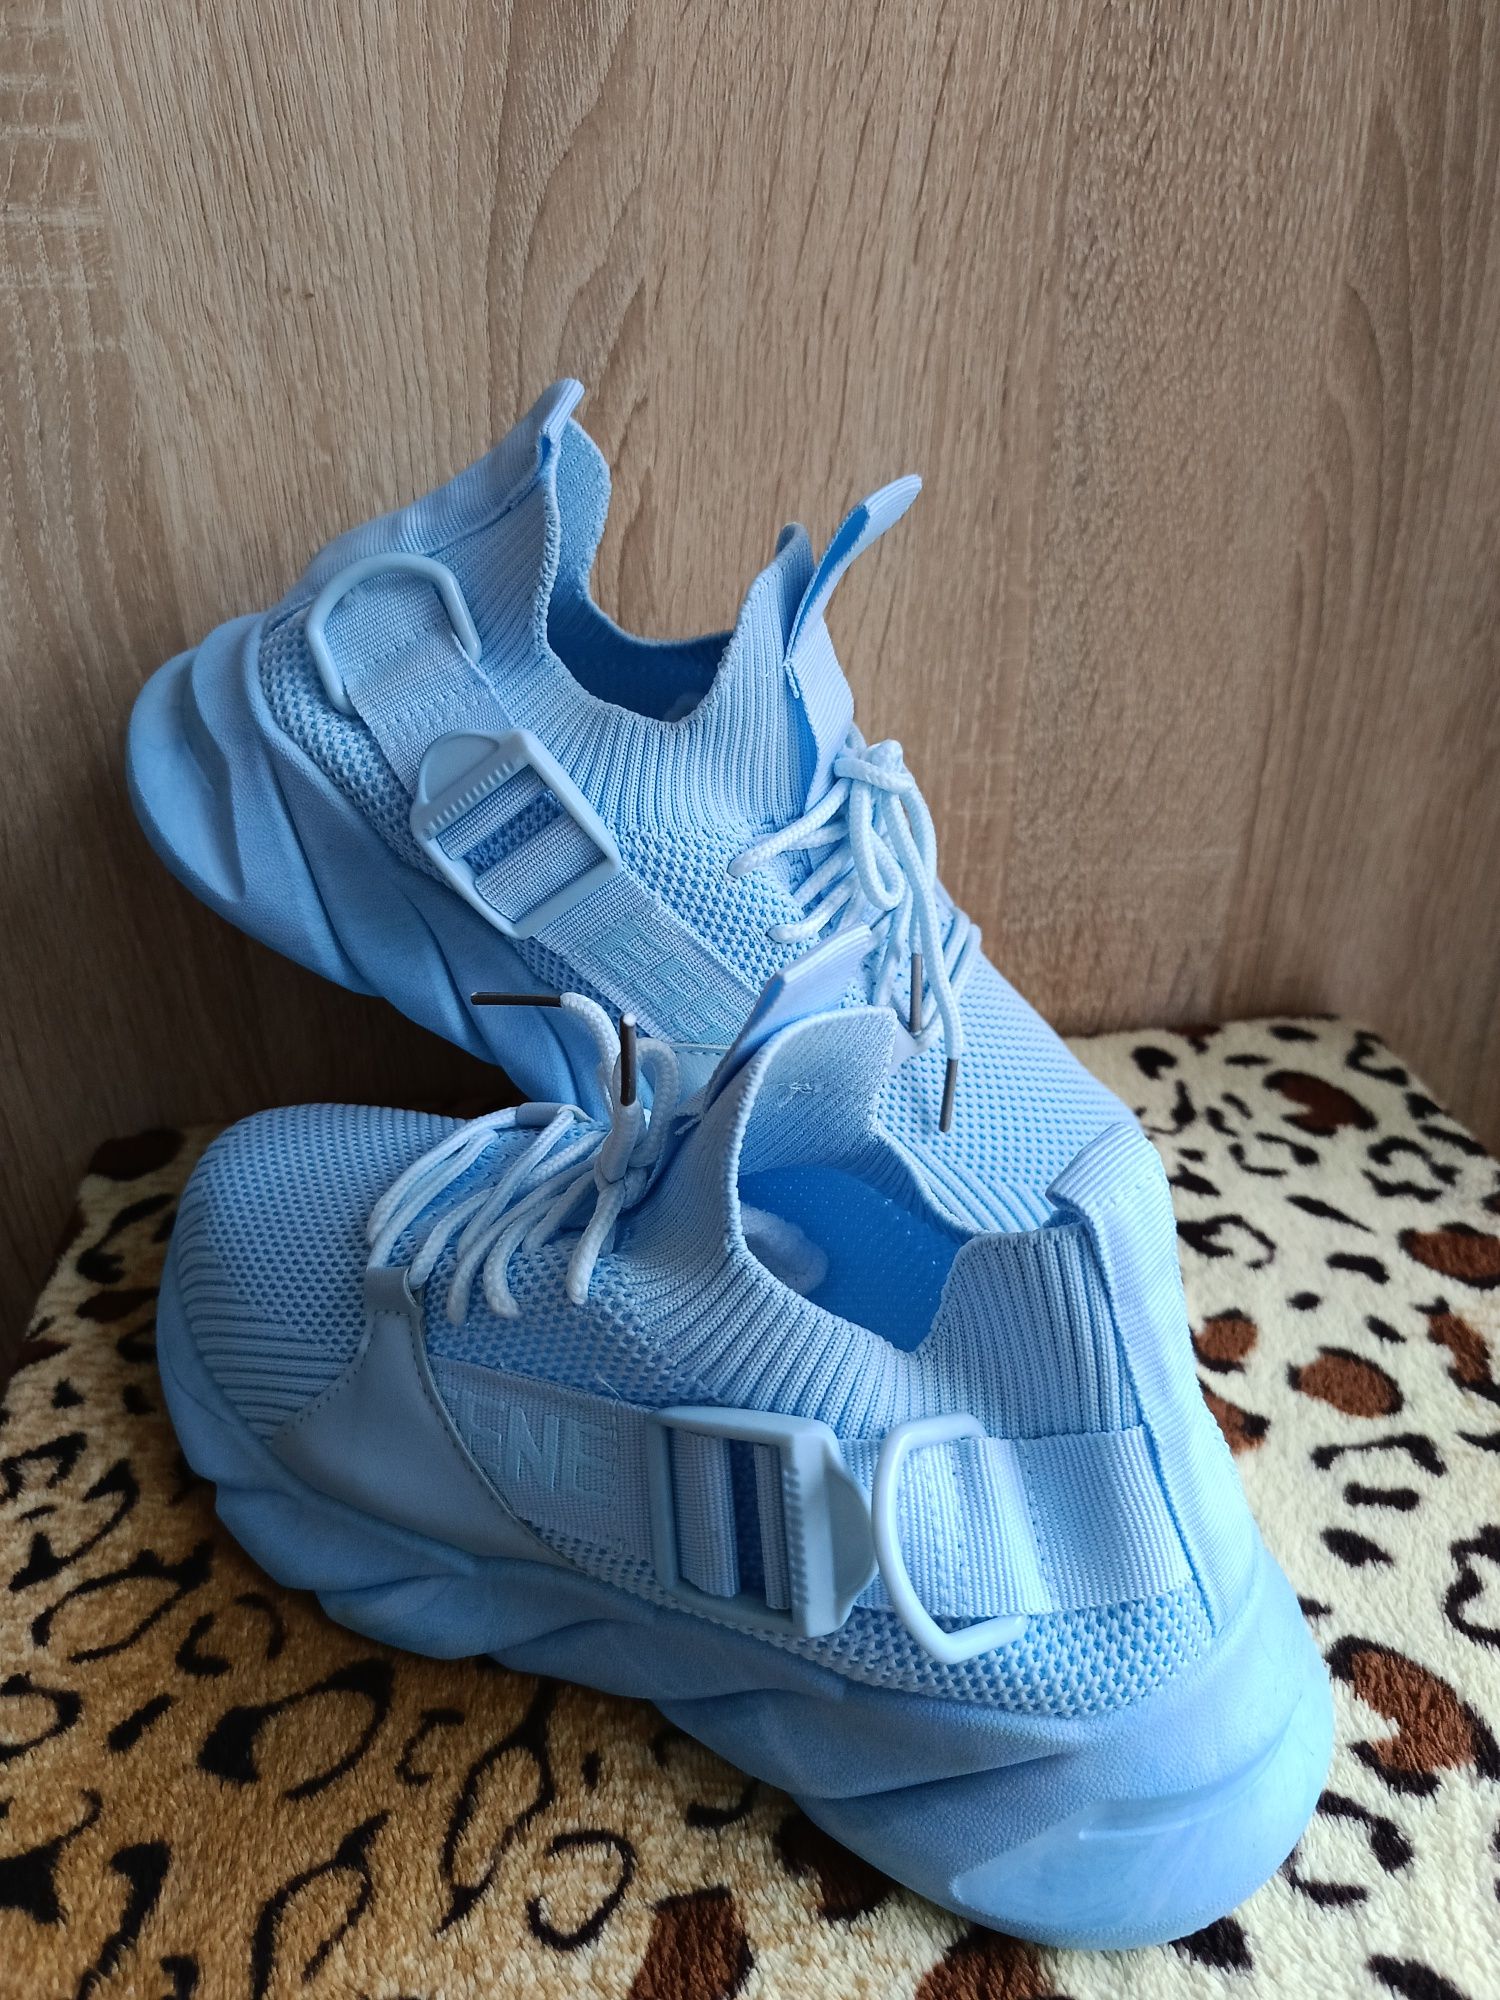 Nowe damskie  buty błękitne siateczka rozmiar 39